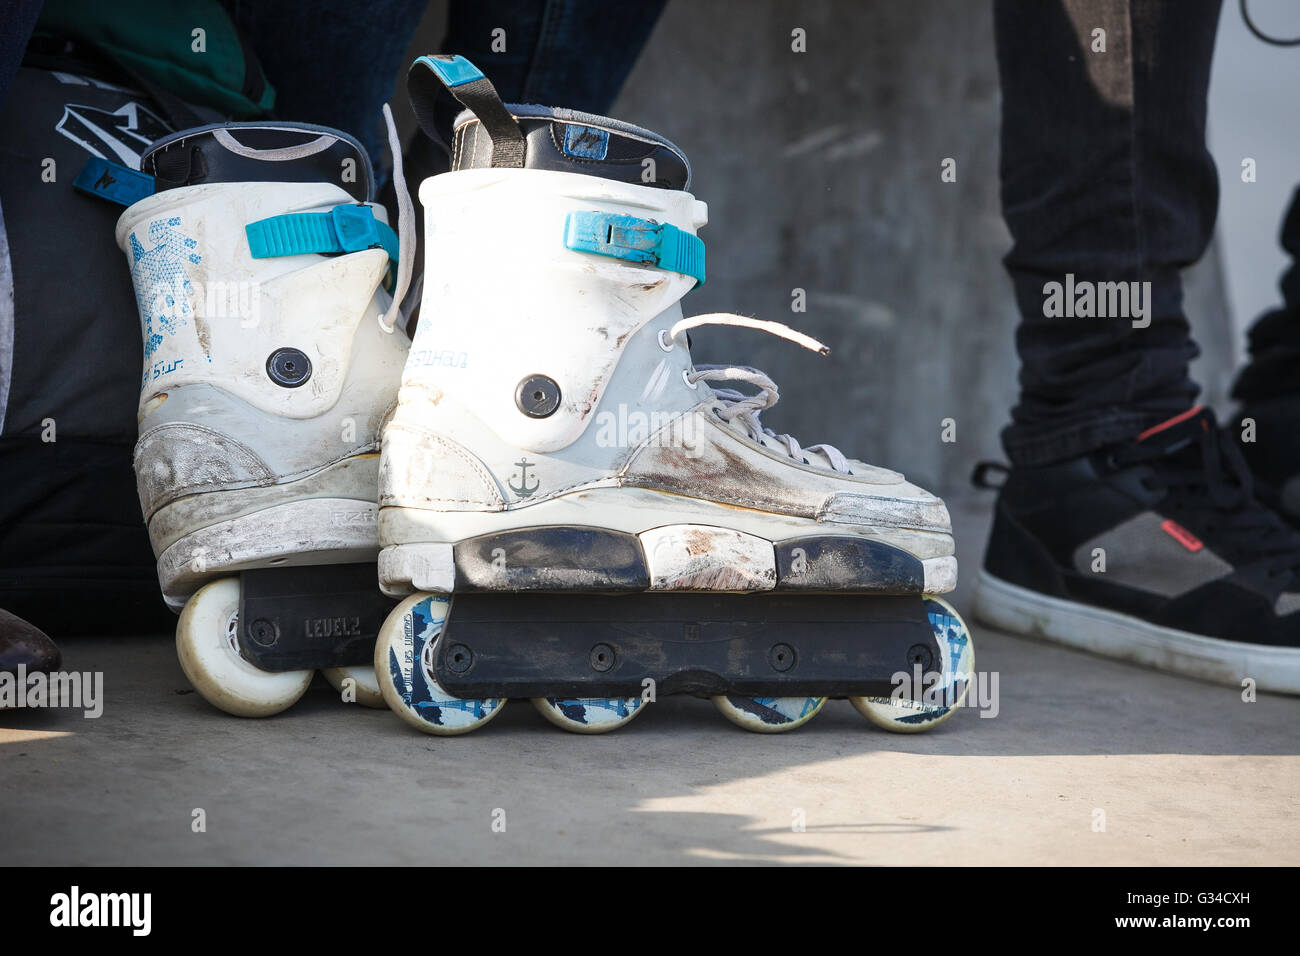 Moscú - 7 Mayo, 2016 : patinar agresiva competencia AZ Picnic tuvo lugar en el parque de skate en memoria de rollerblader Sadovniki Andrey Zaytcev quien falleció en 2012 Foto de stock